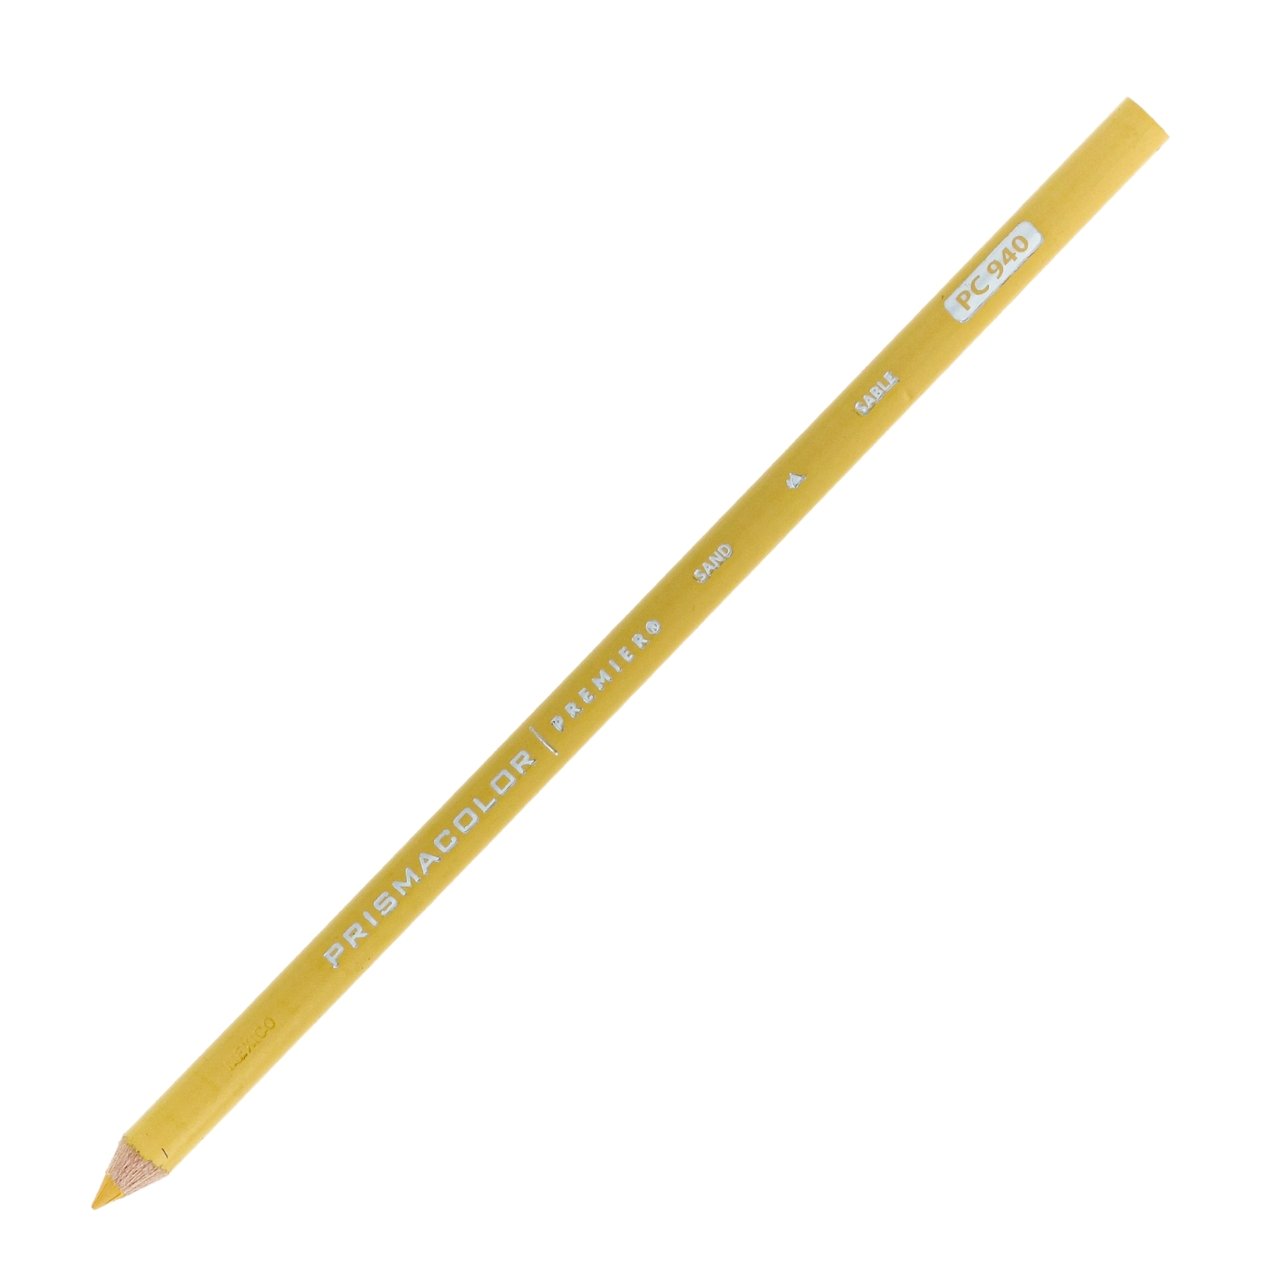 Prismacolor Premier Colored Pencil Box, Sand - 12 count